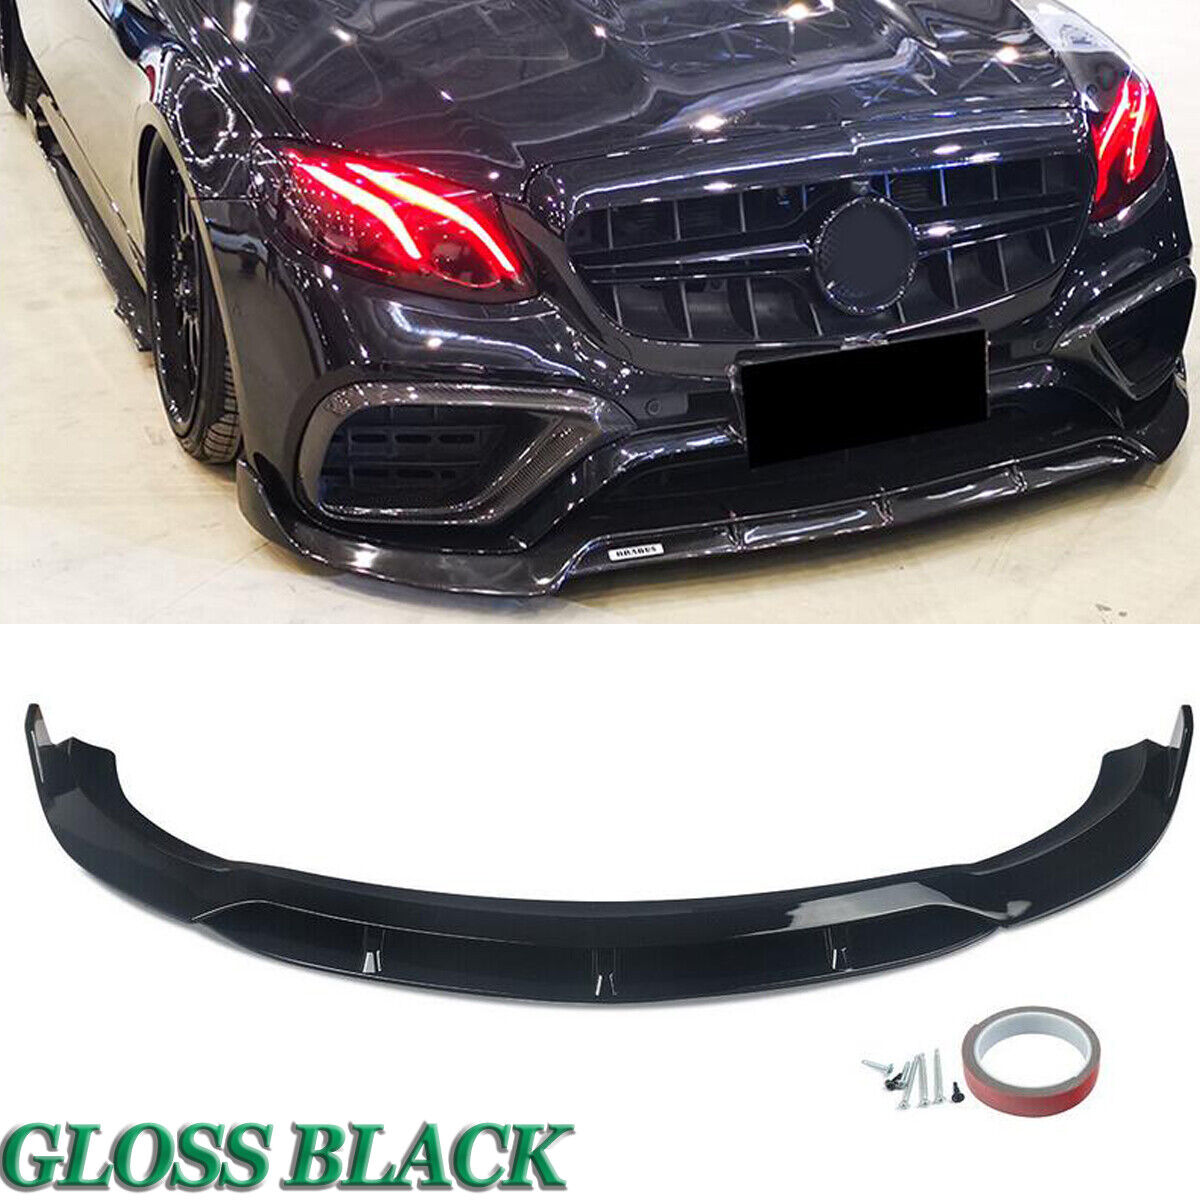 Glossy Black Front Splitter Spoiler Lip For Mercedes Benz W213 E63 AMG 2016-2019